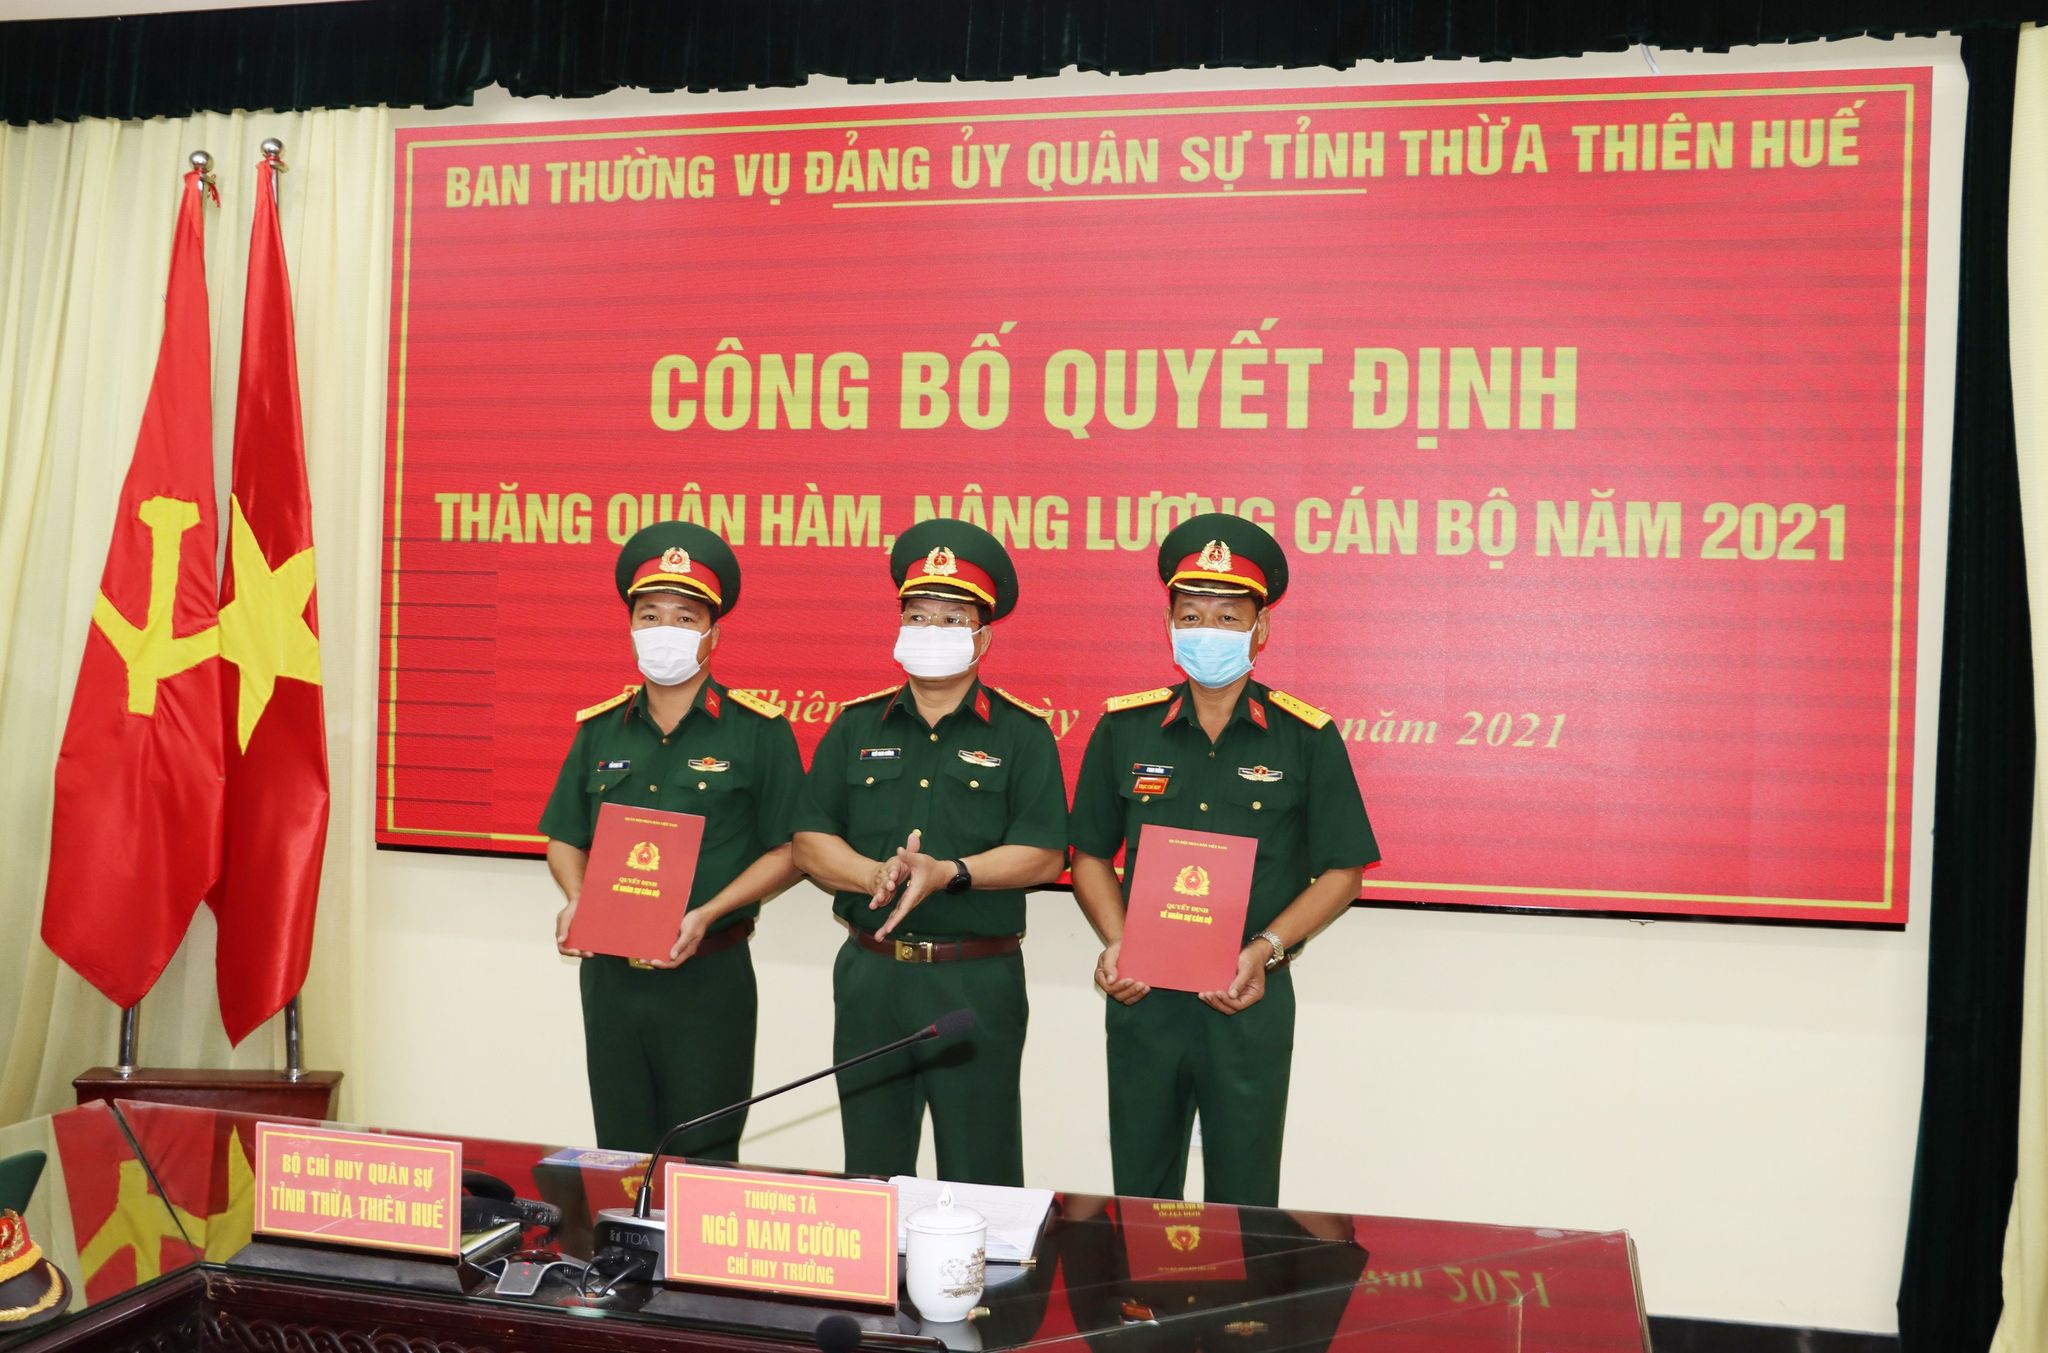 Trao quyết định thăng quân hàm từ Trung tá lên Thượng tá đối với đồng chí Phan Thắng và đồng chí Đỗ Minh Trí.